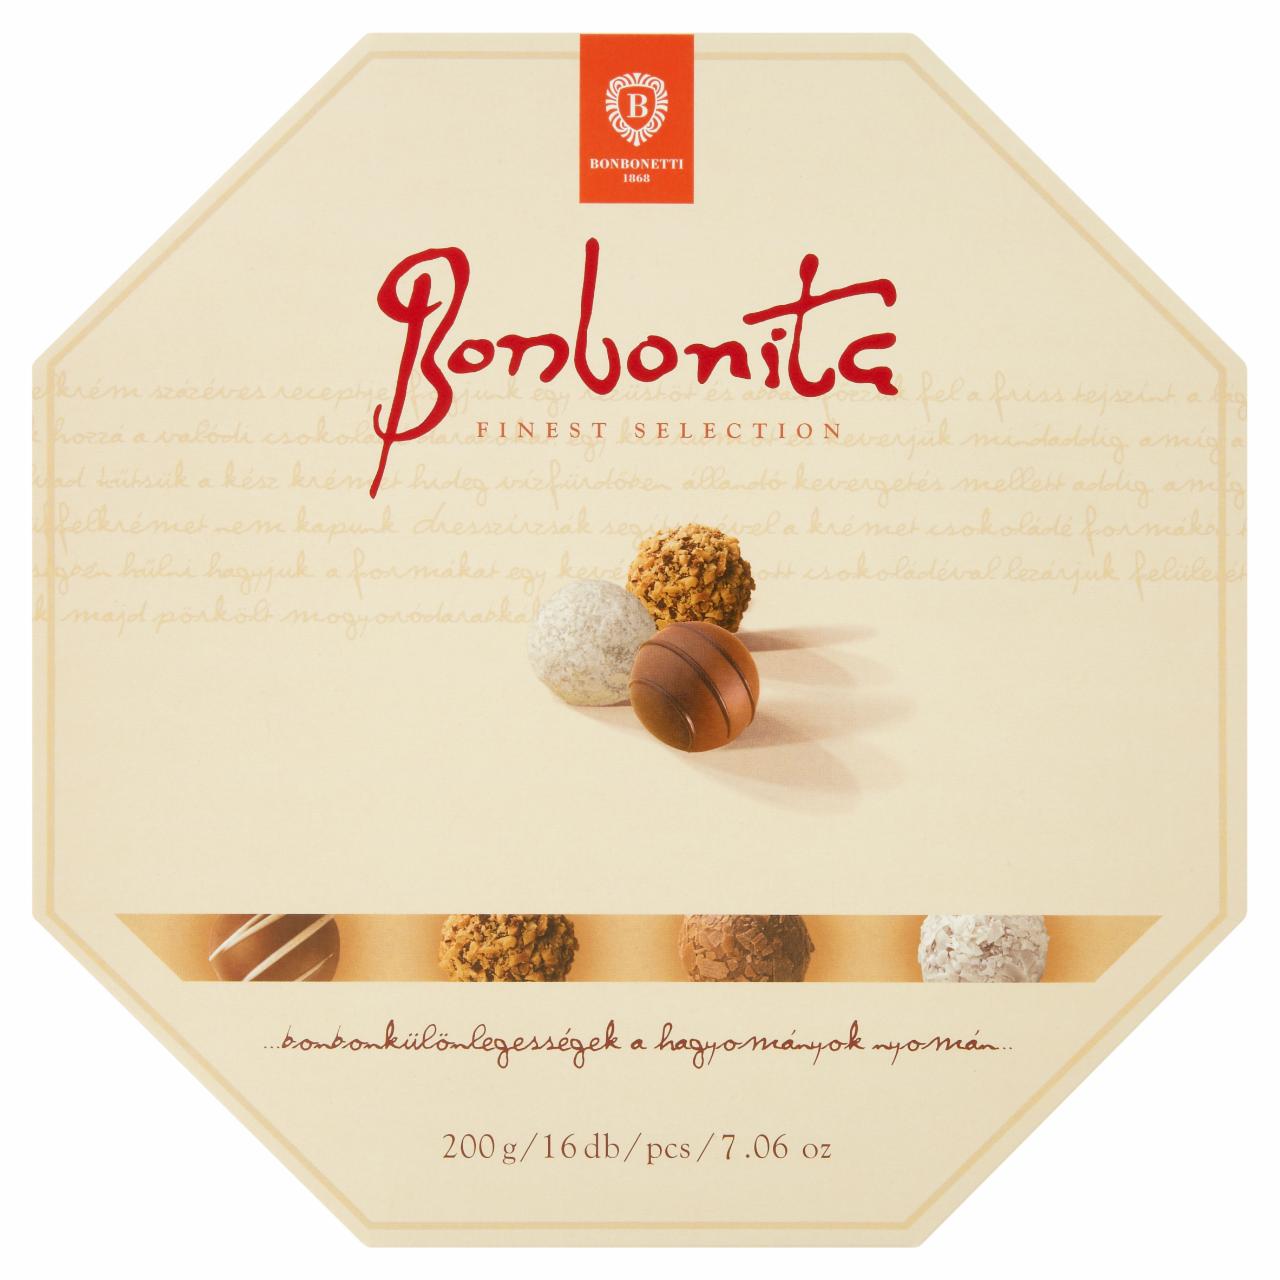 Képek - Bonbonetti Bonbonita Finest Selection bonbonkülönlegességek 16 db 200 g